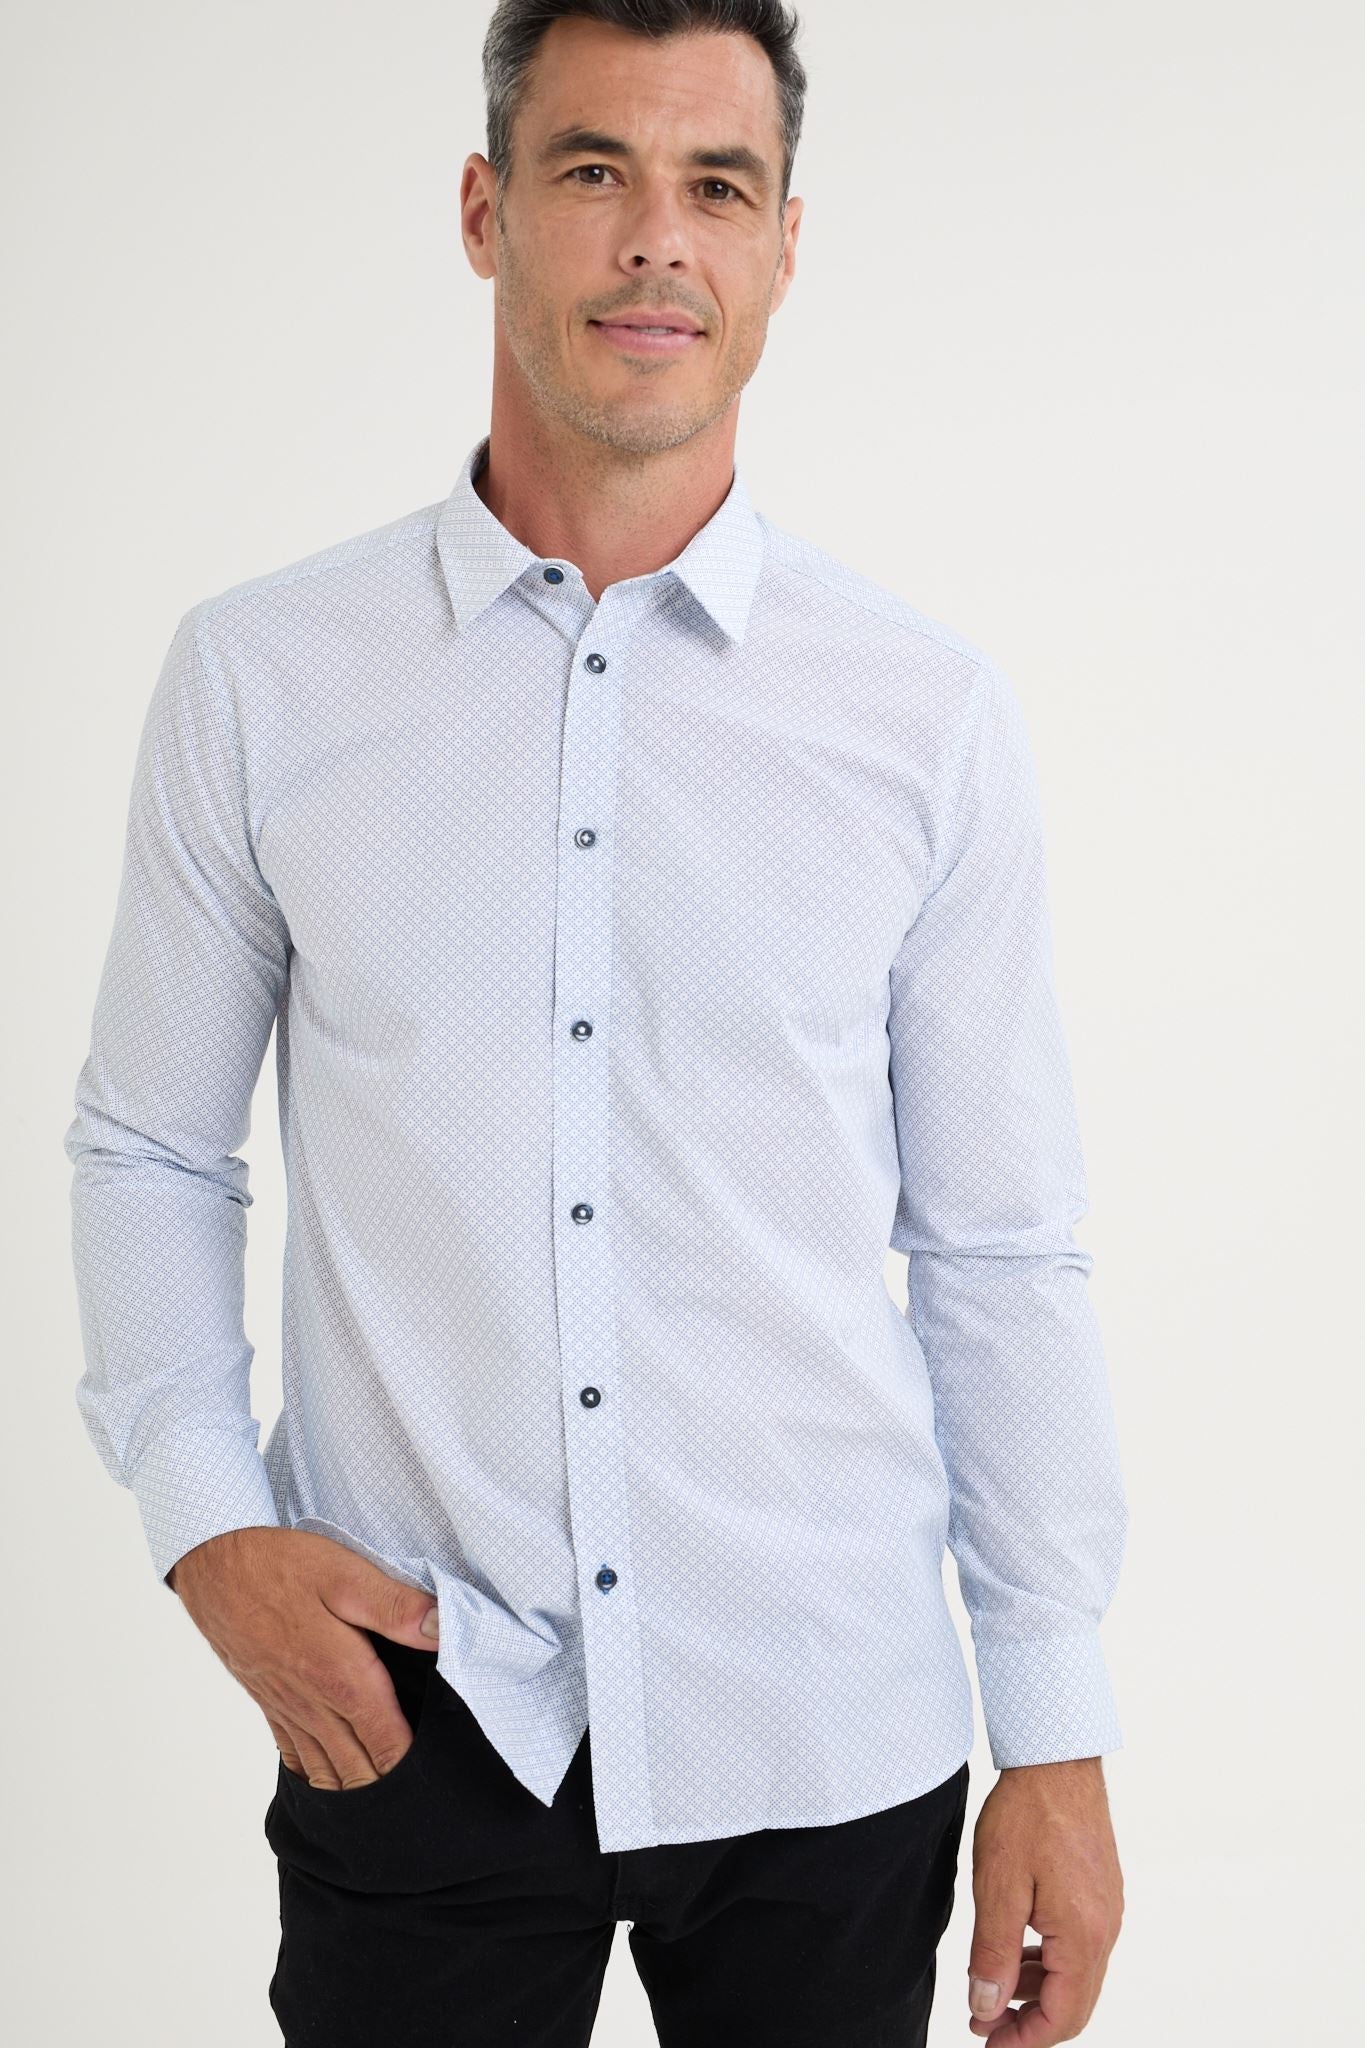 Long-sleeved printed shirt